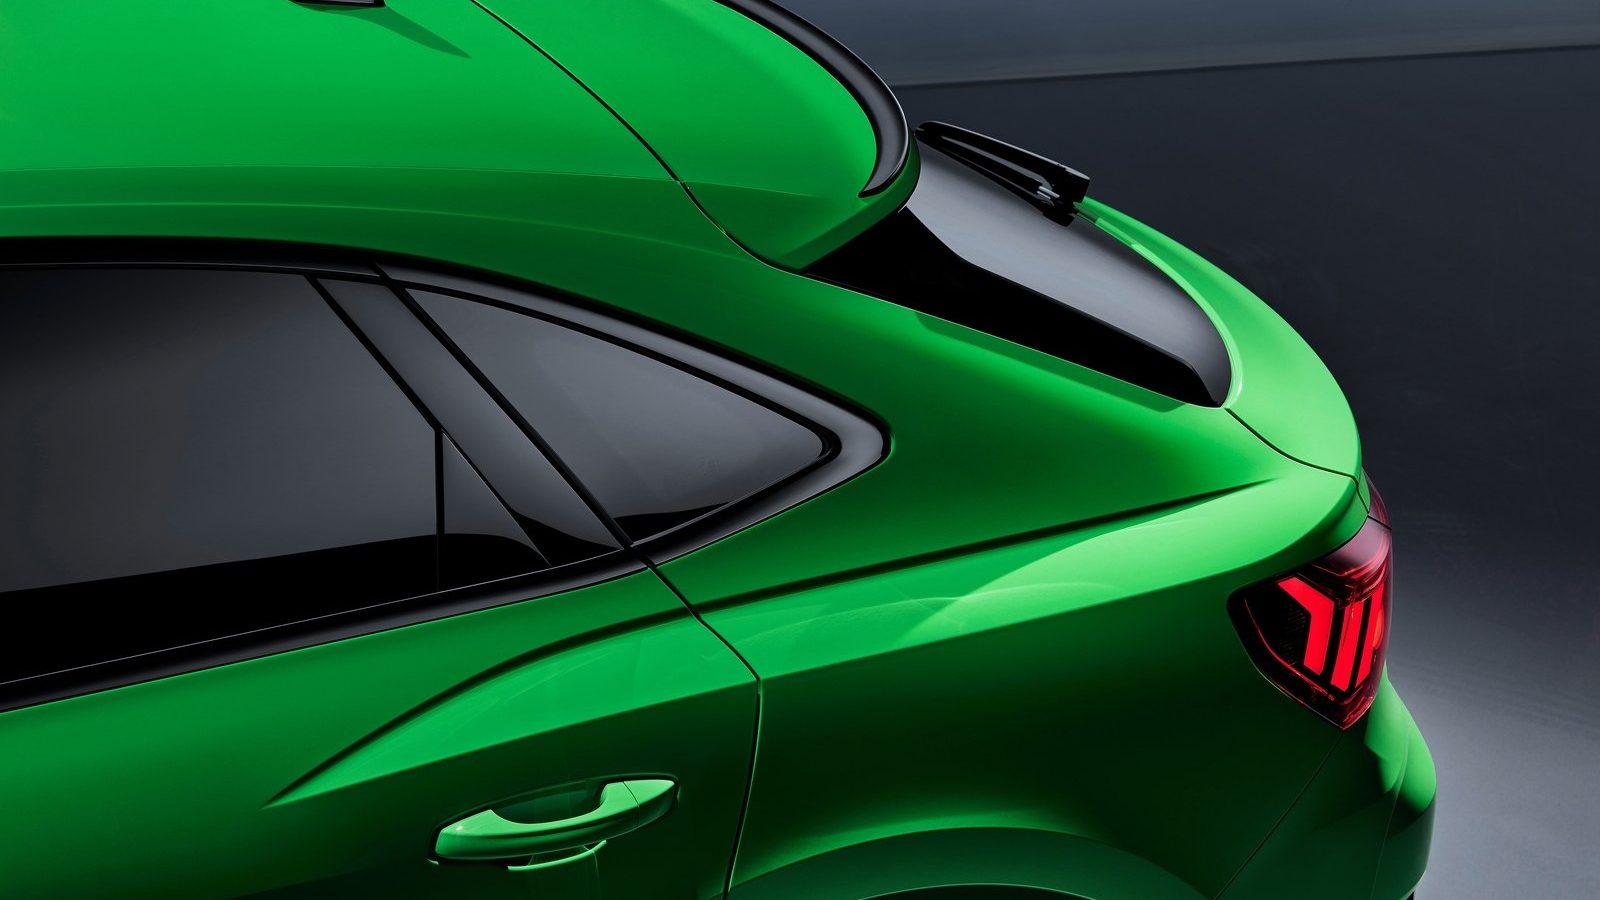 Het achteraanzicht van een groene Audi RS3 hatchback met een BPM-upgrade.